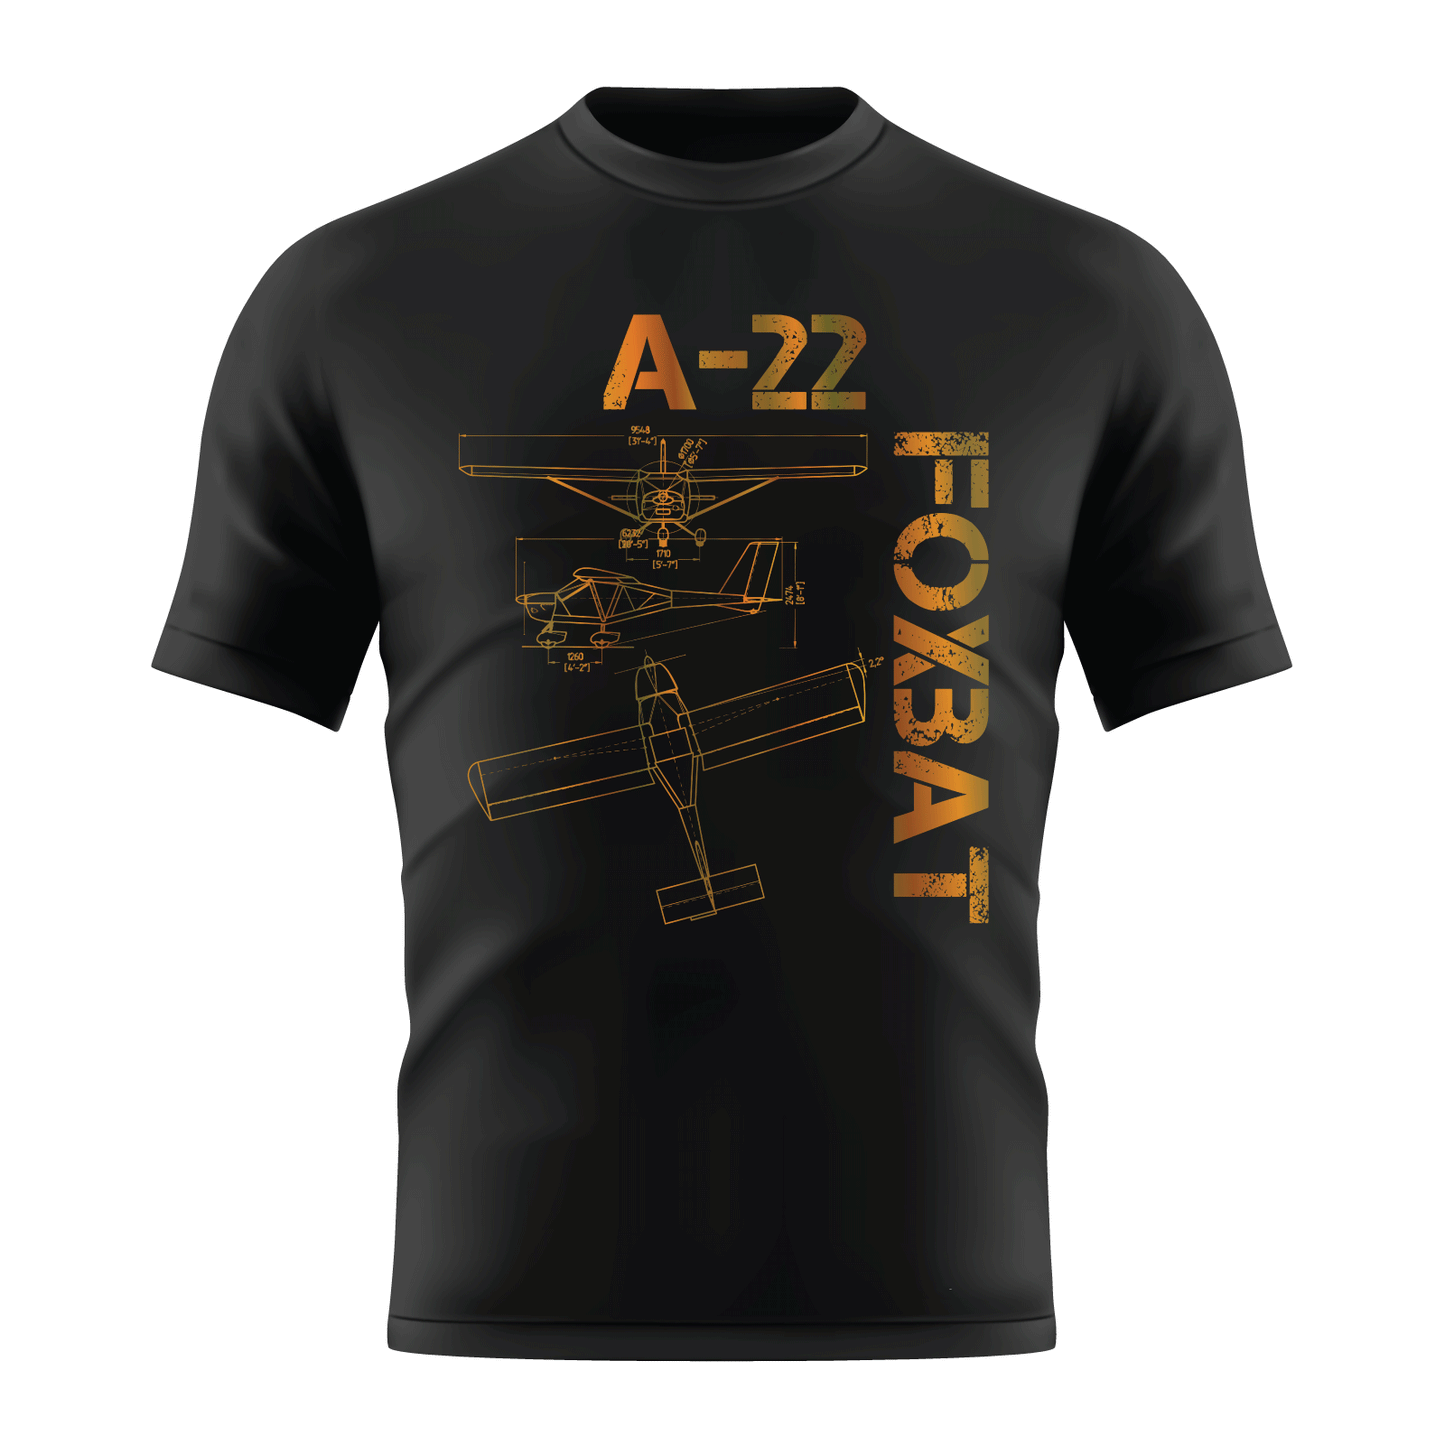 A-22 Foxbat